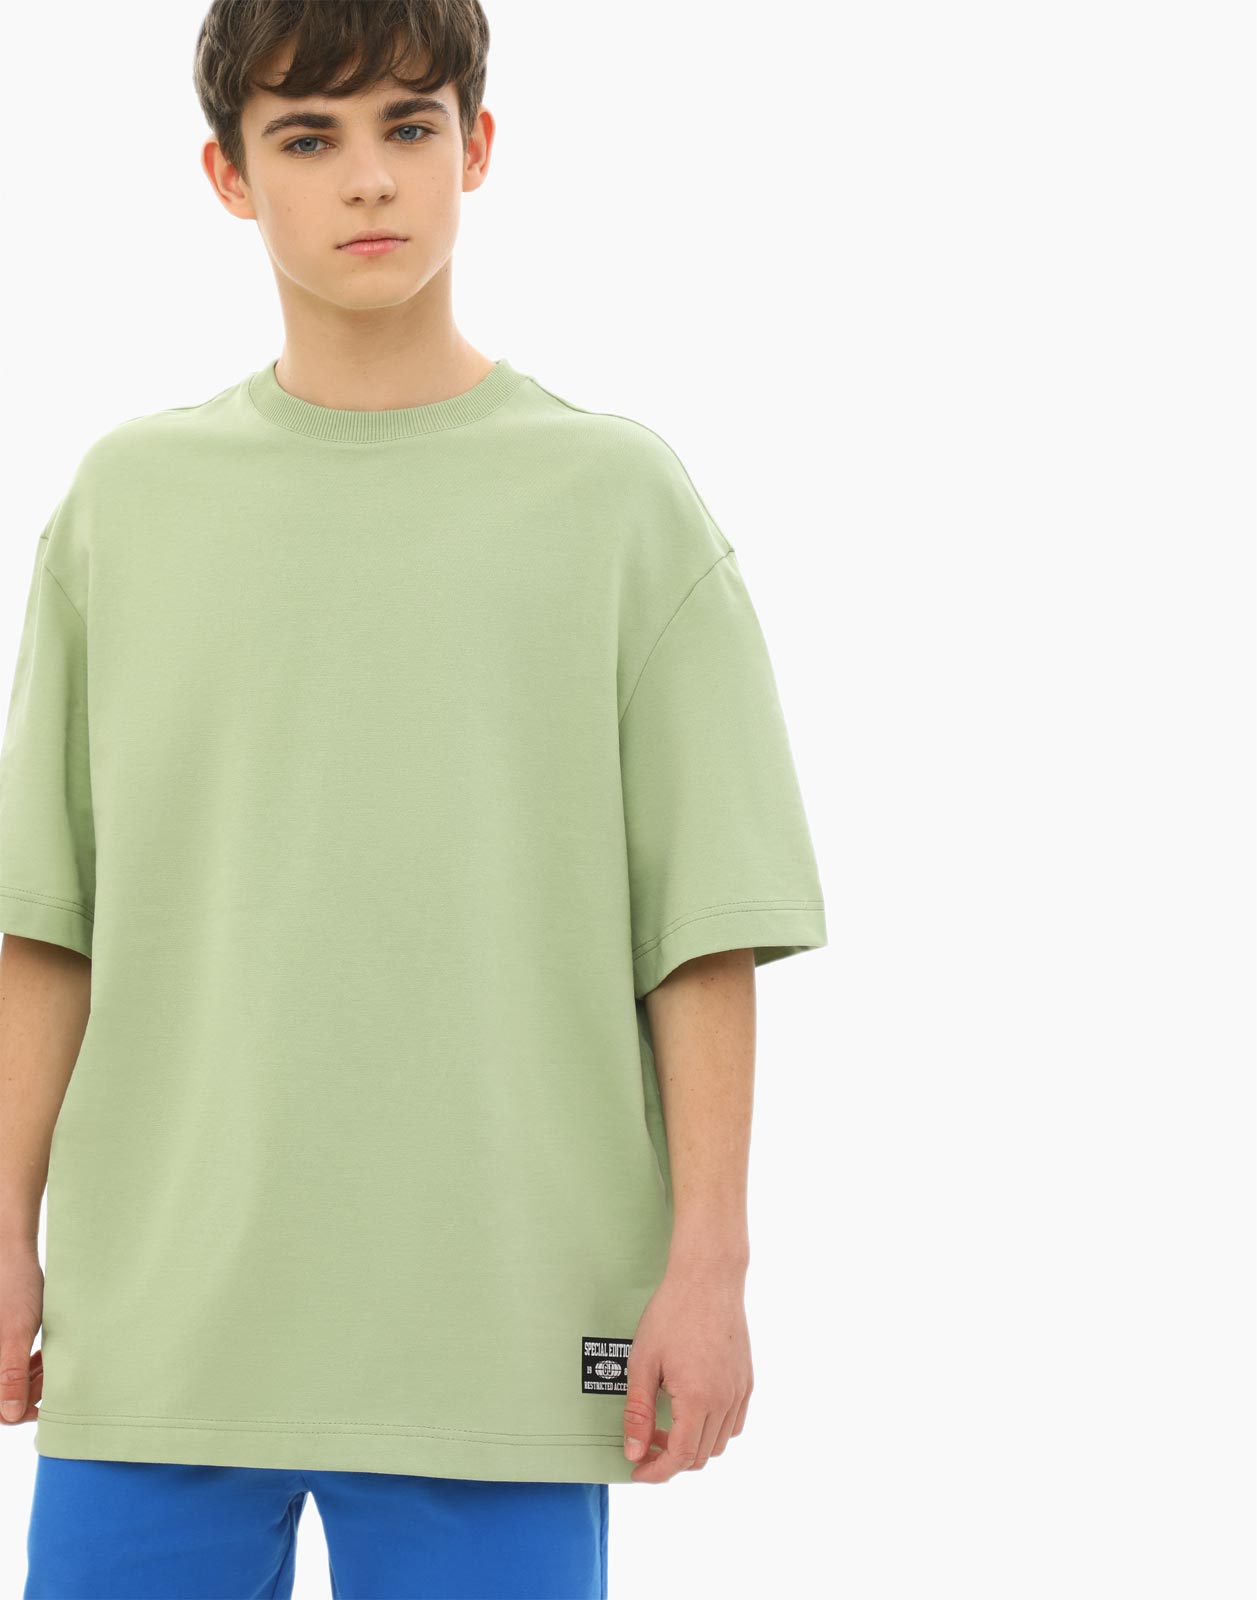 Оливковая базовая футболка для мальчика 8-10л/134-140